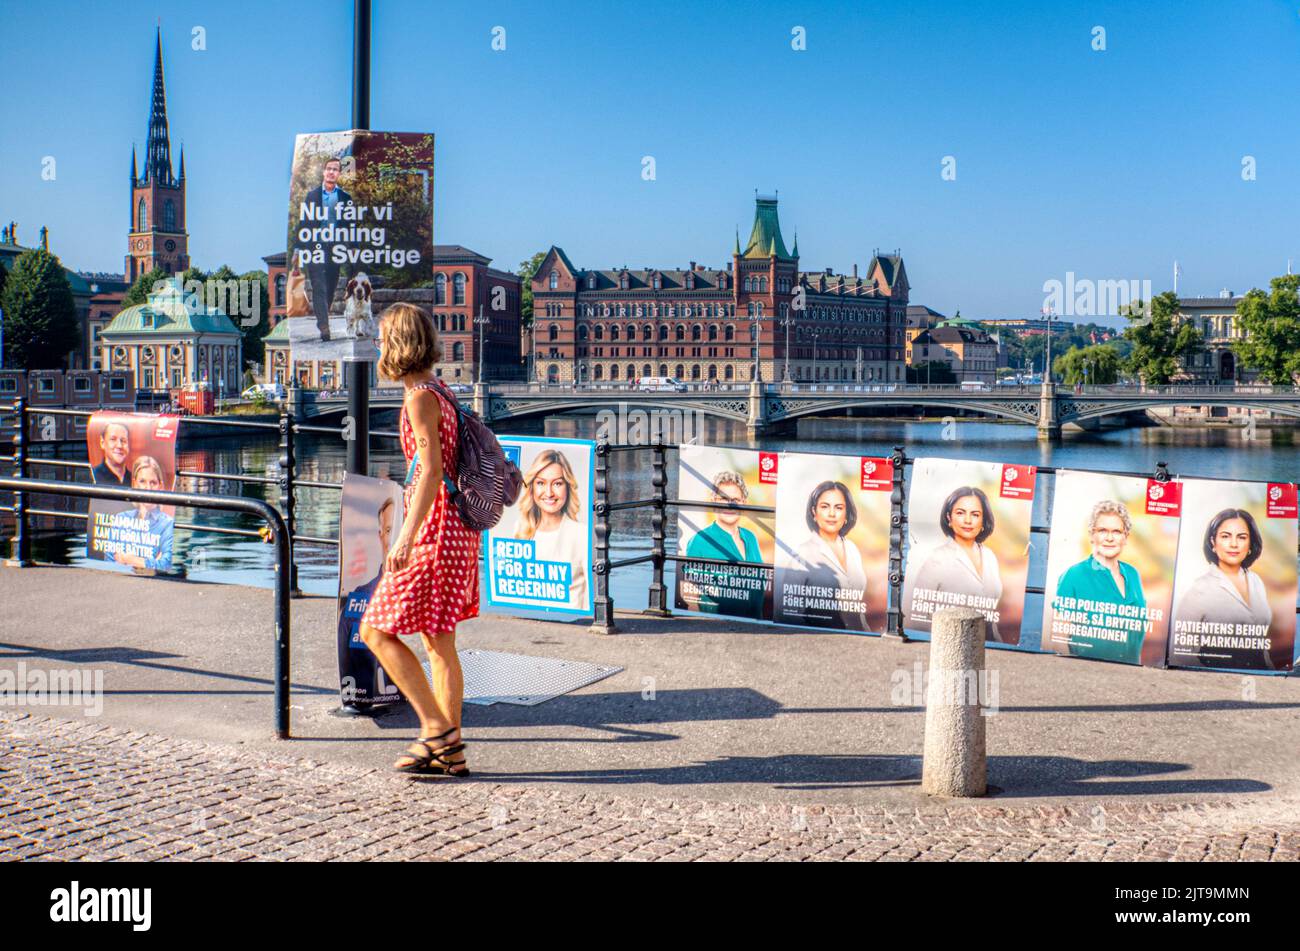 Politique et élections suédoises. Affiches politiques sur un pont menant au Parlement suédois, Stockholm, Suède Banque D'Images